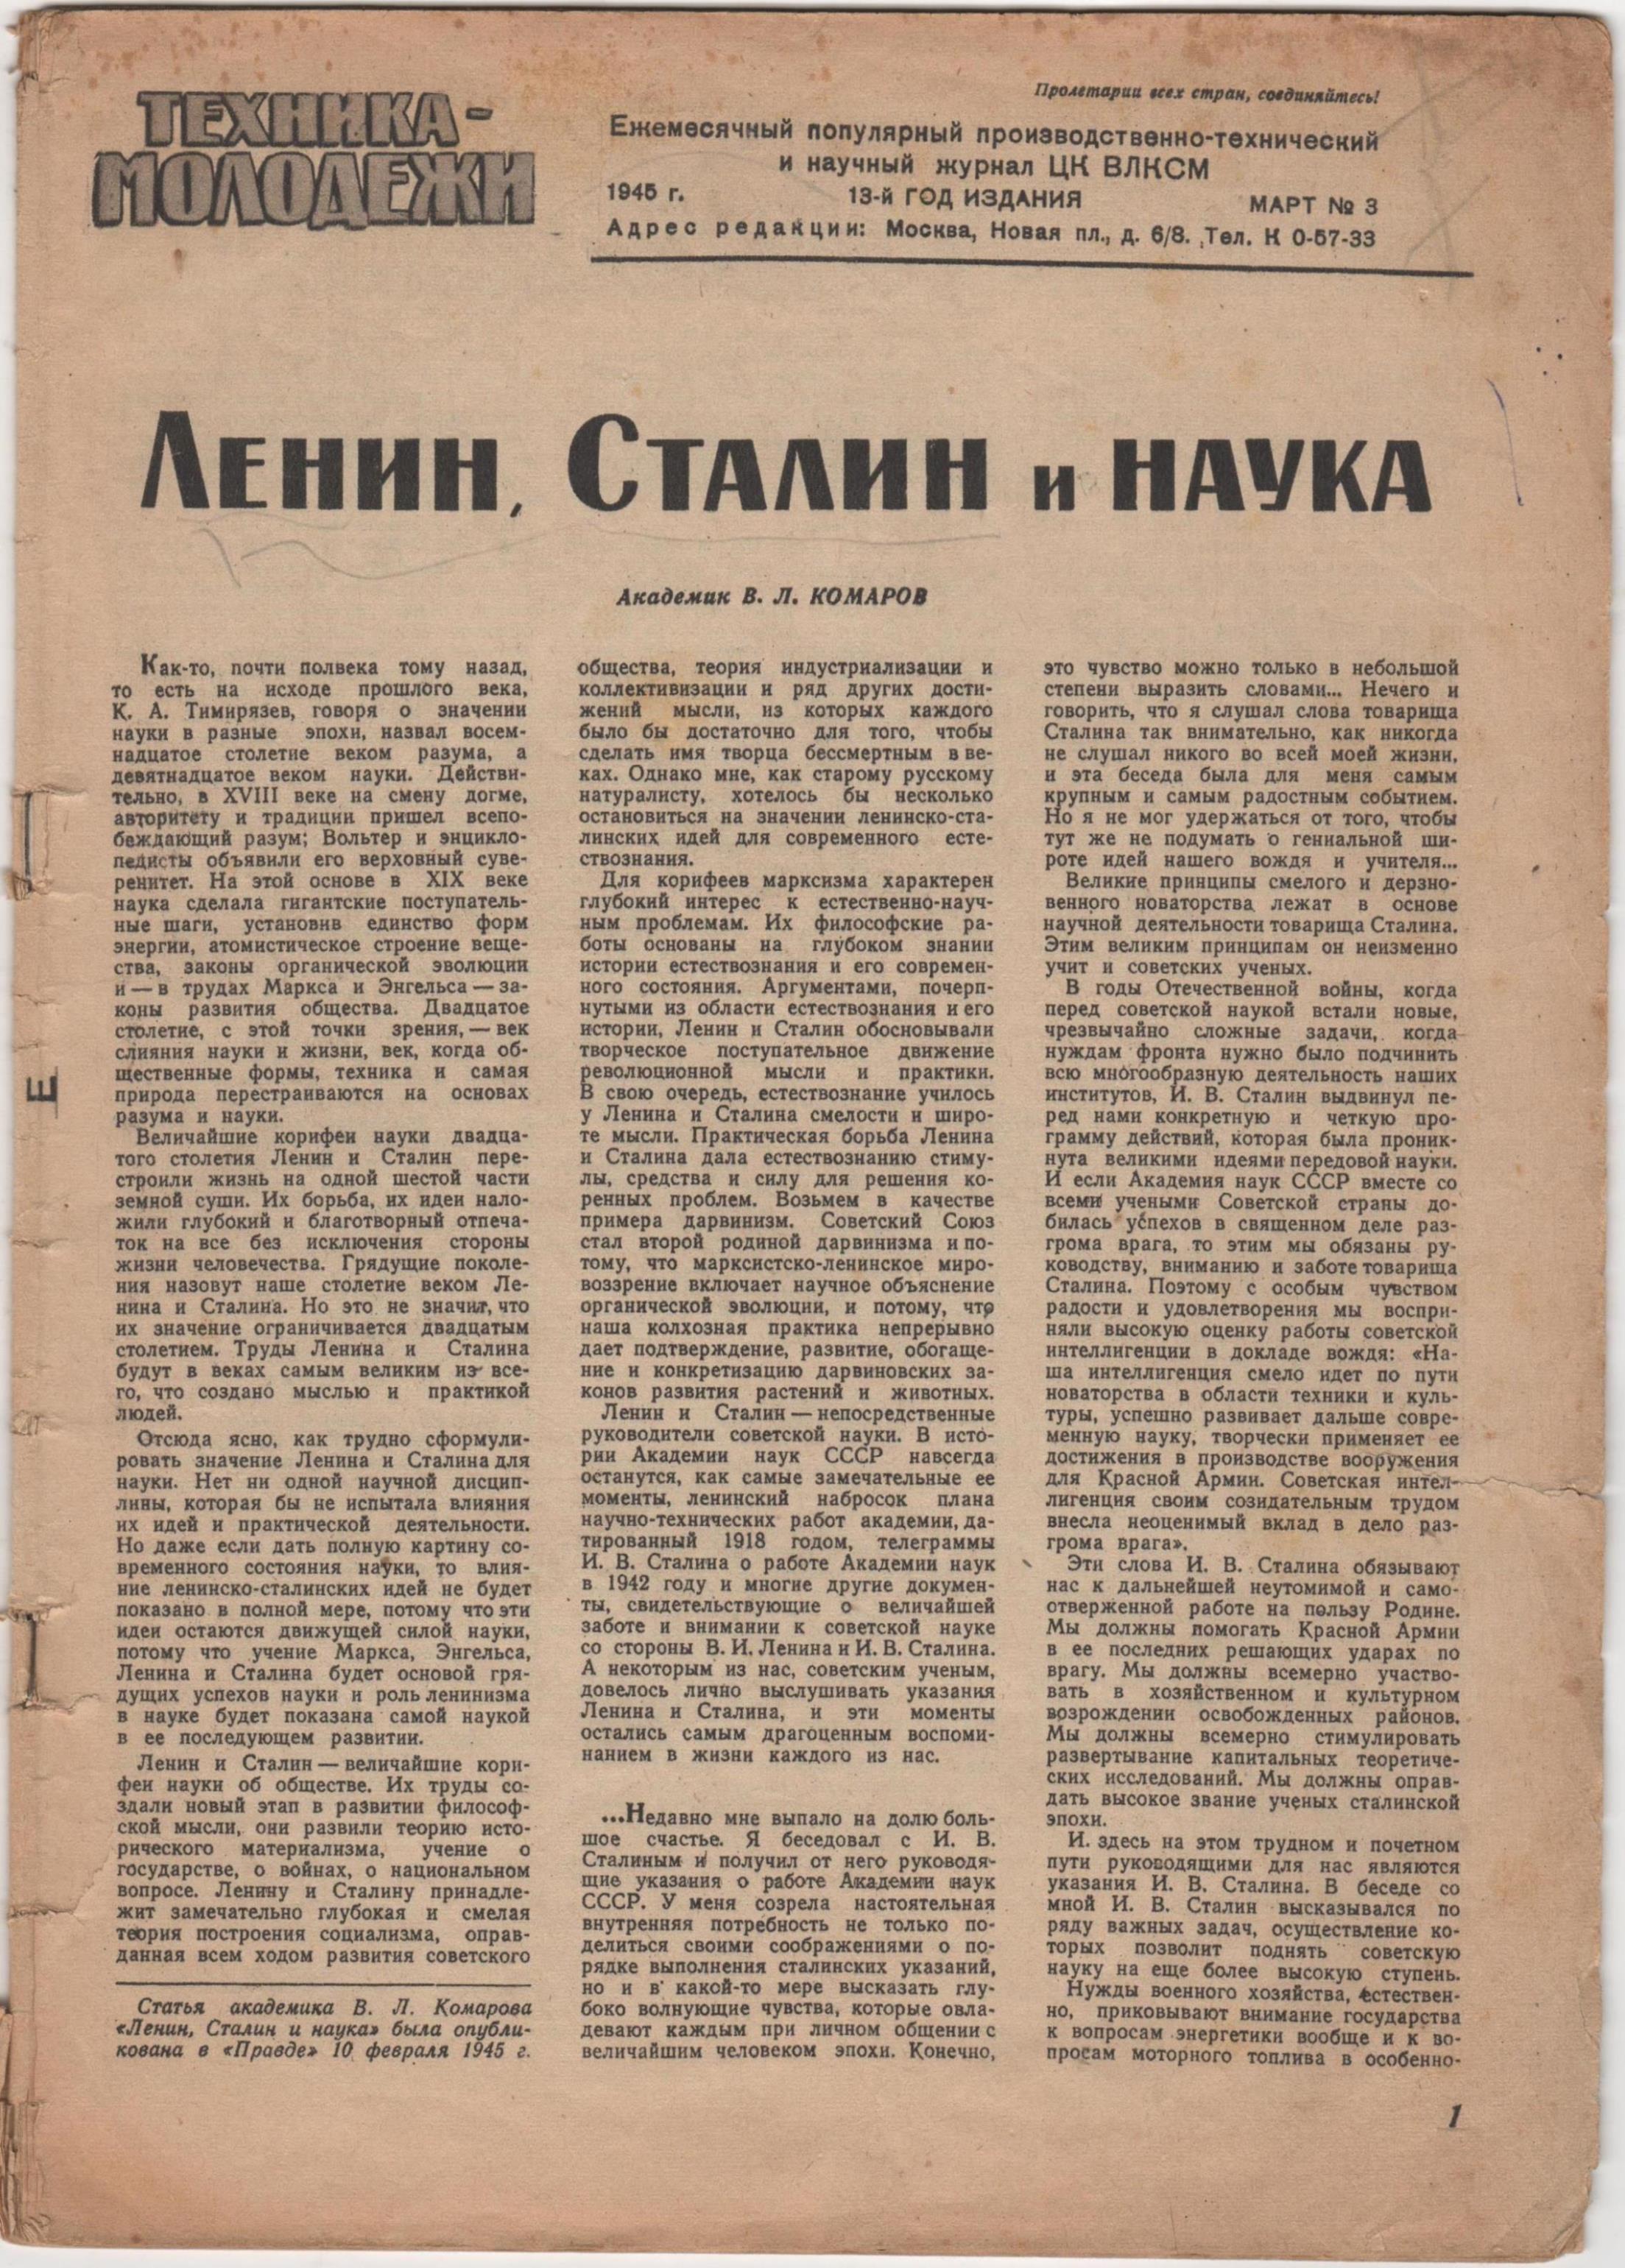 Журнал "Техника - молодежи". 1945. № 3 (березень)